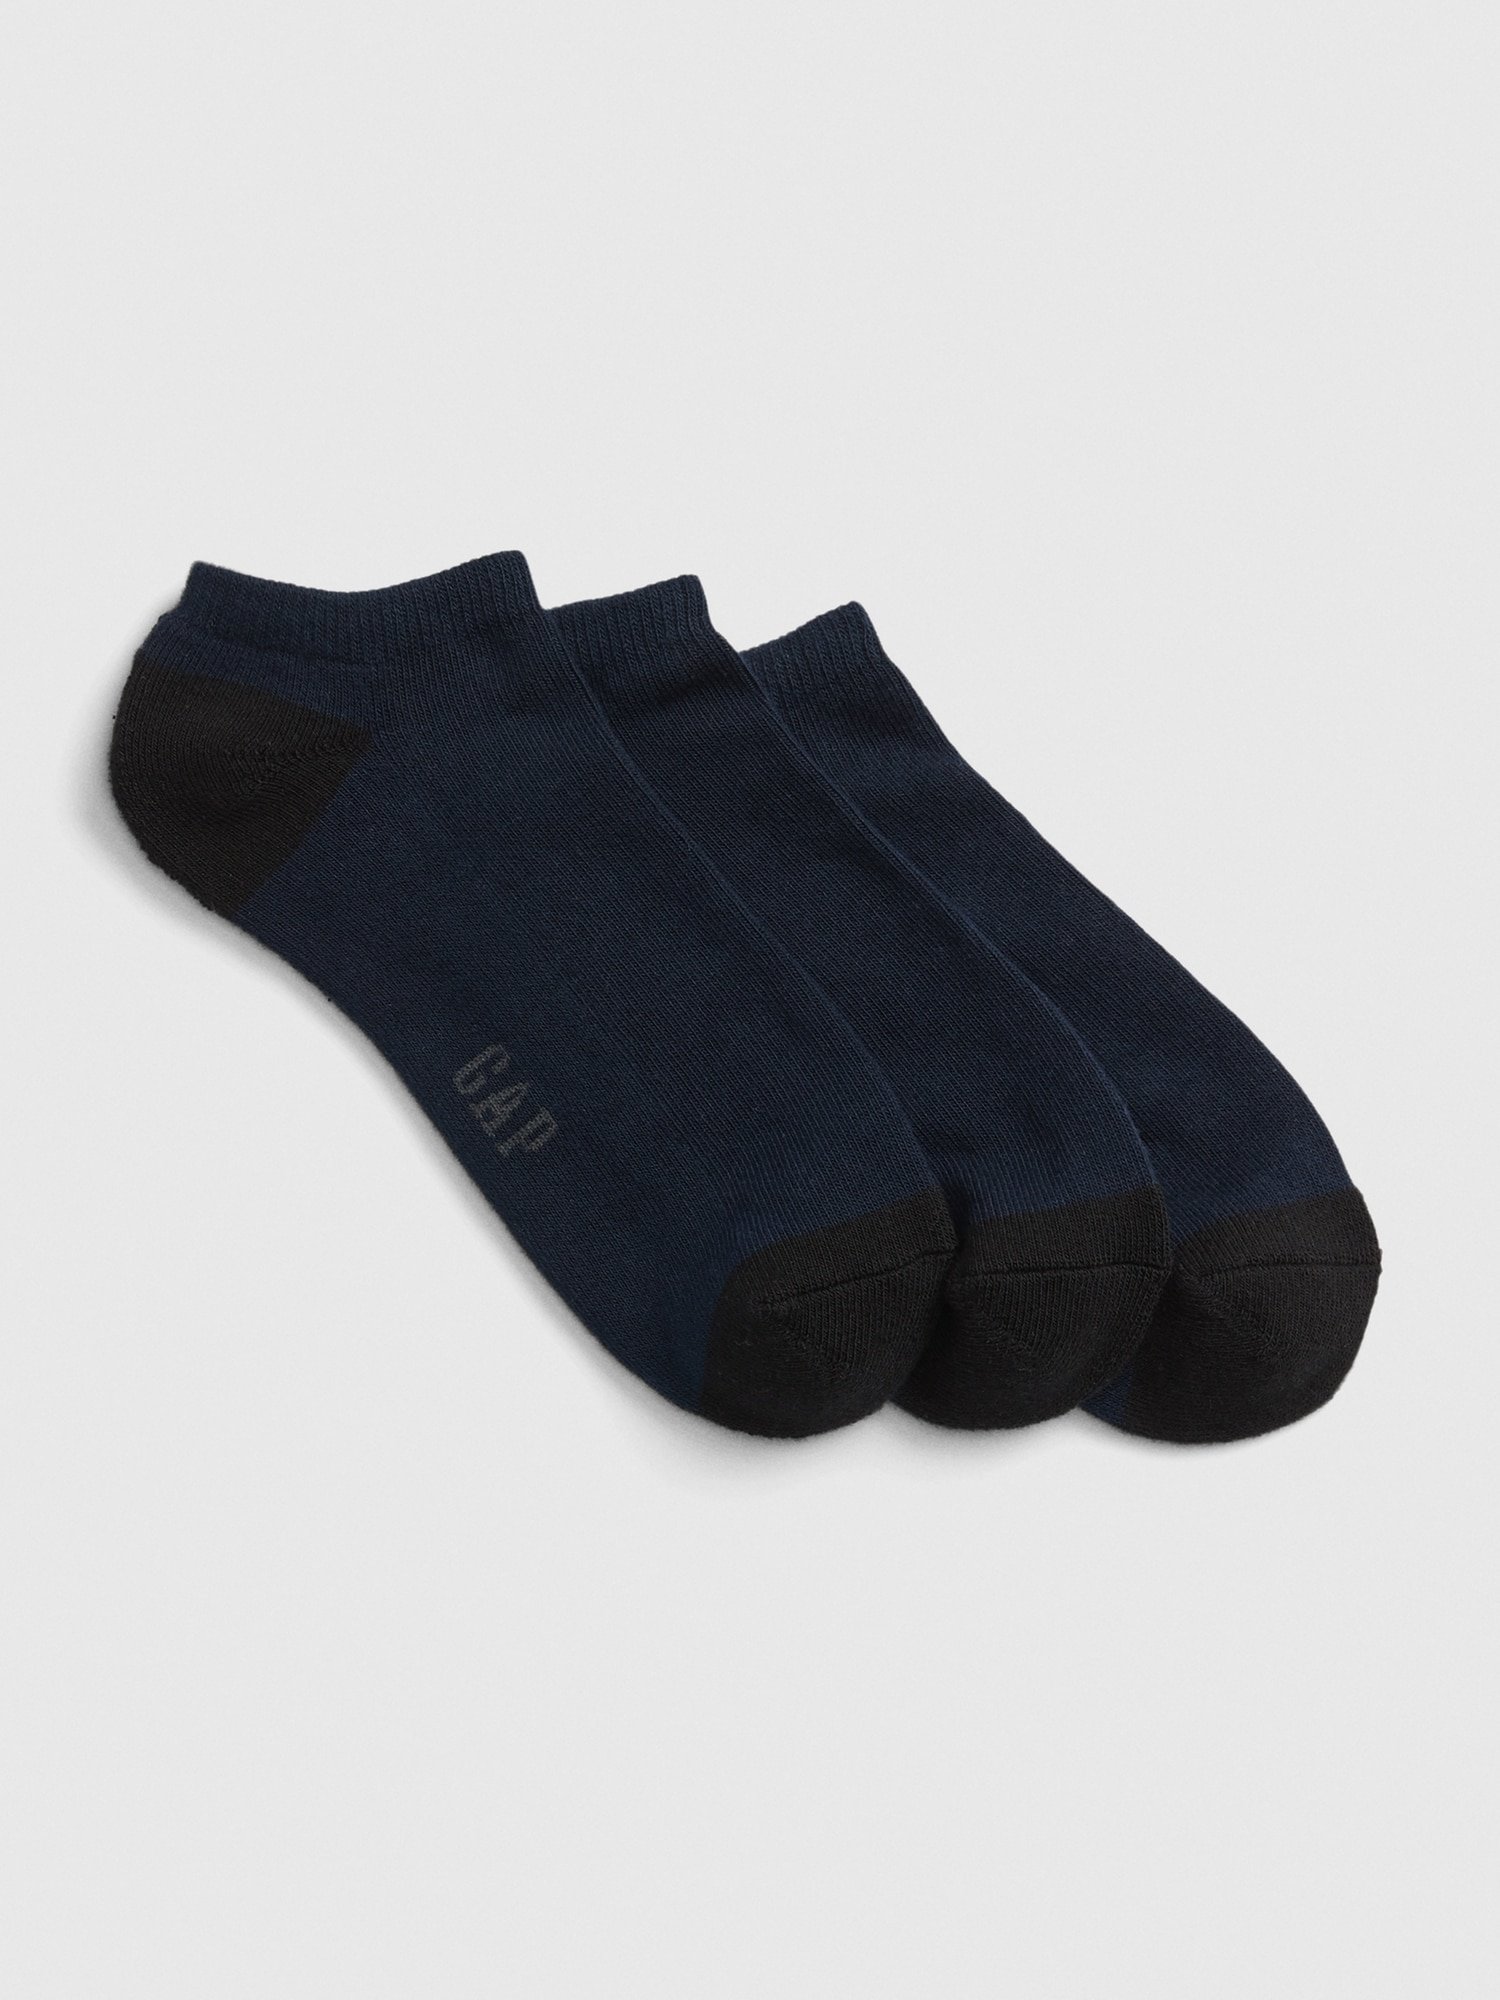 Fotografie Modré pánské ponožky bas ankle, 3 páry